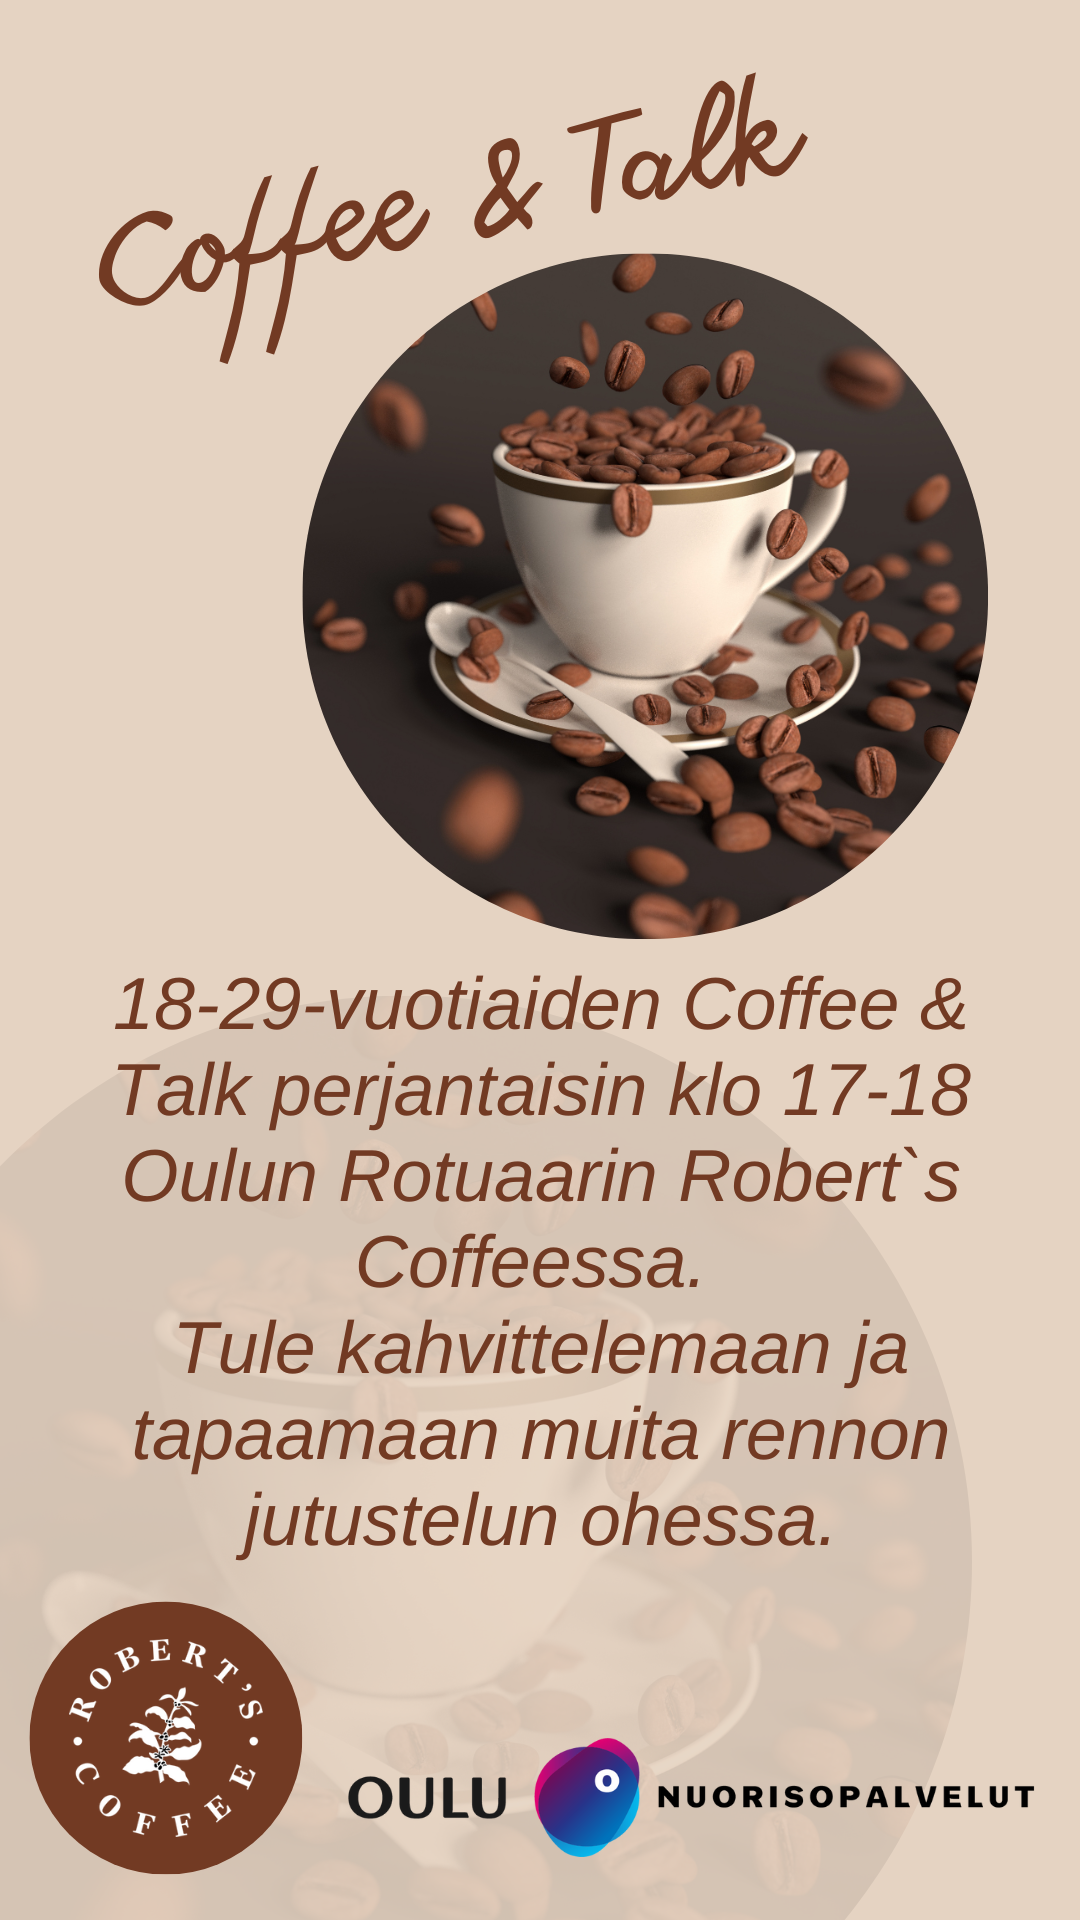 Coffee&talk mainos.